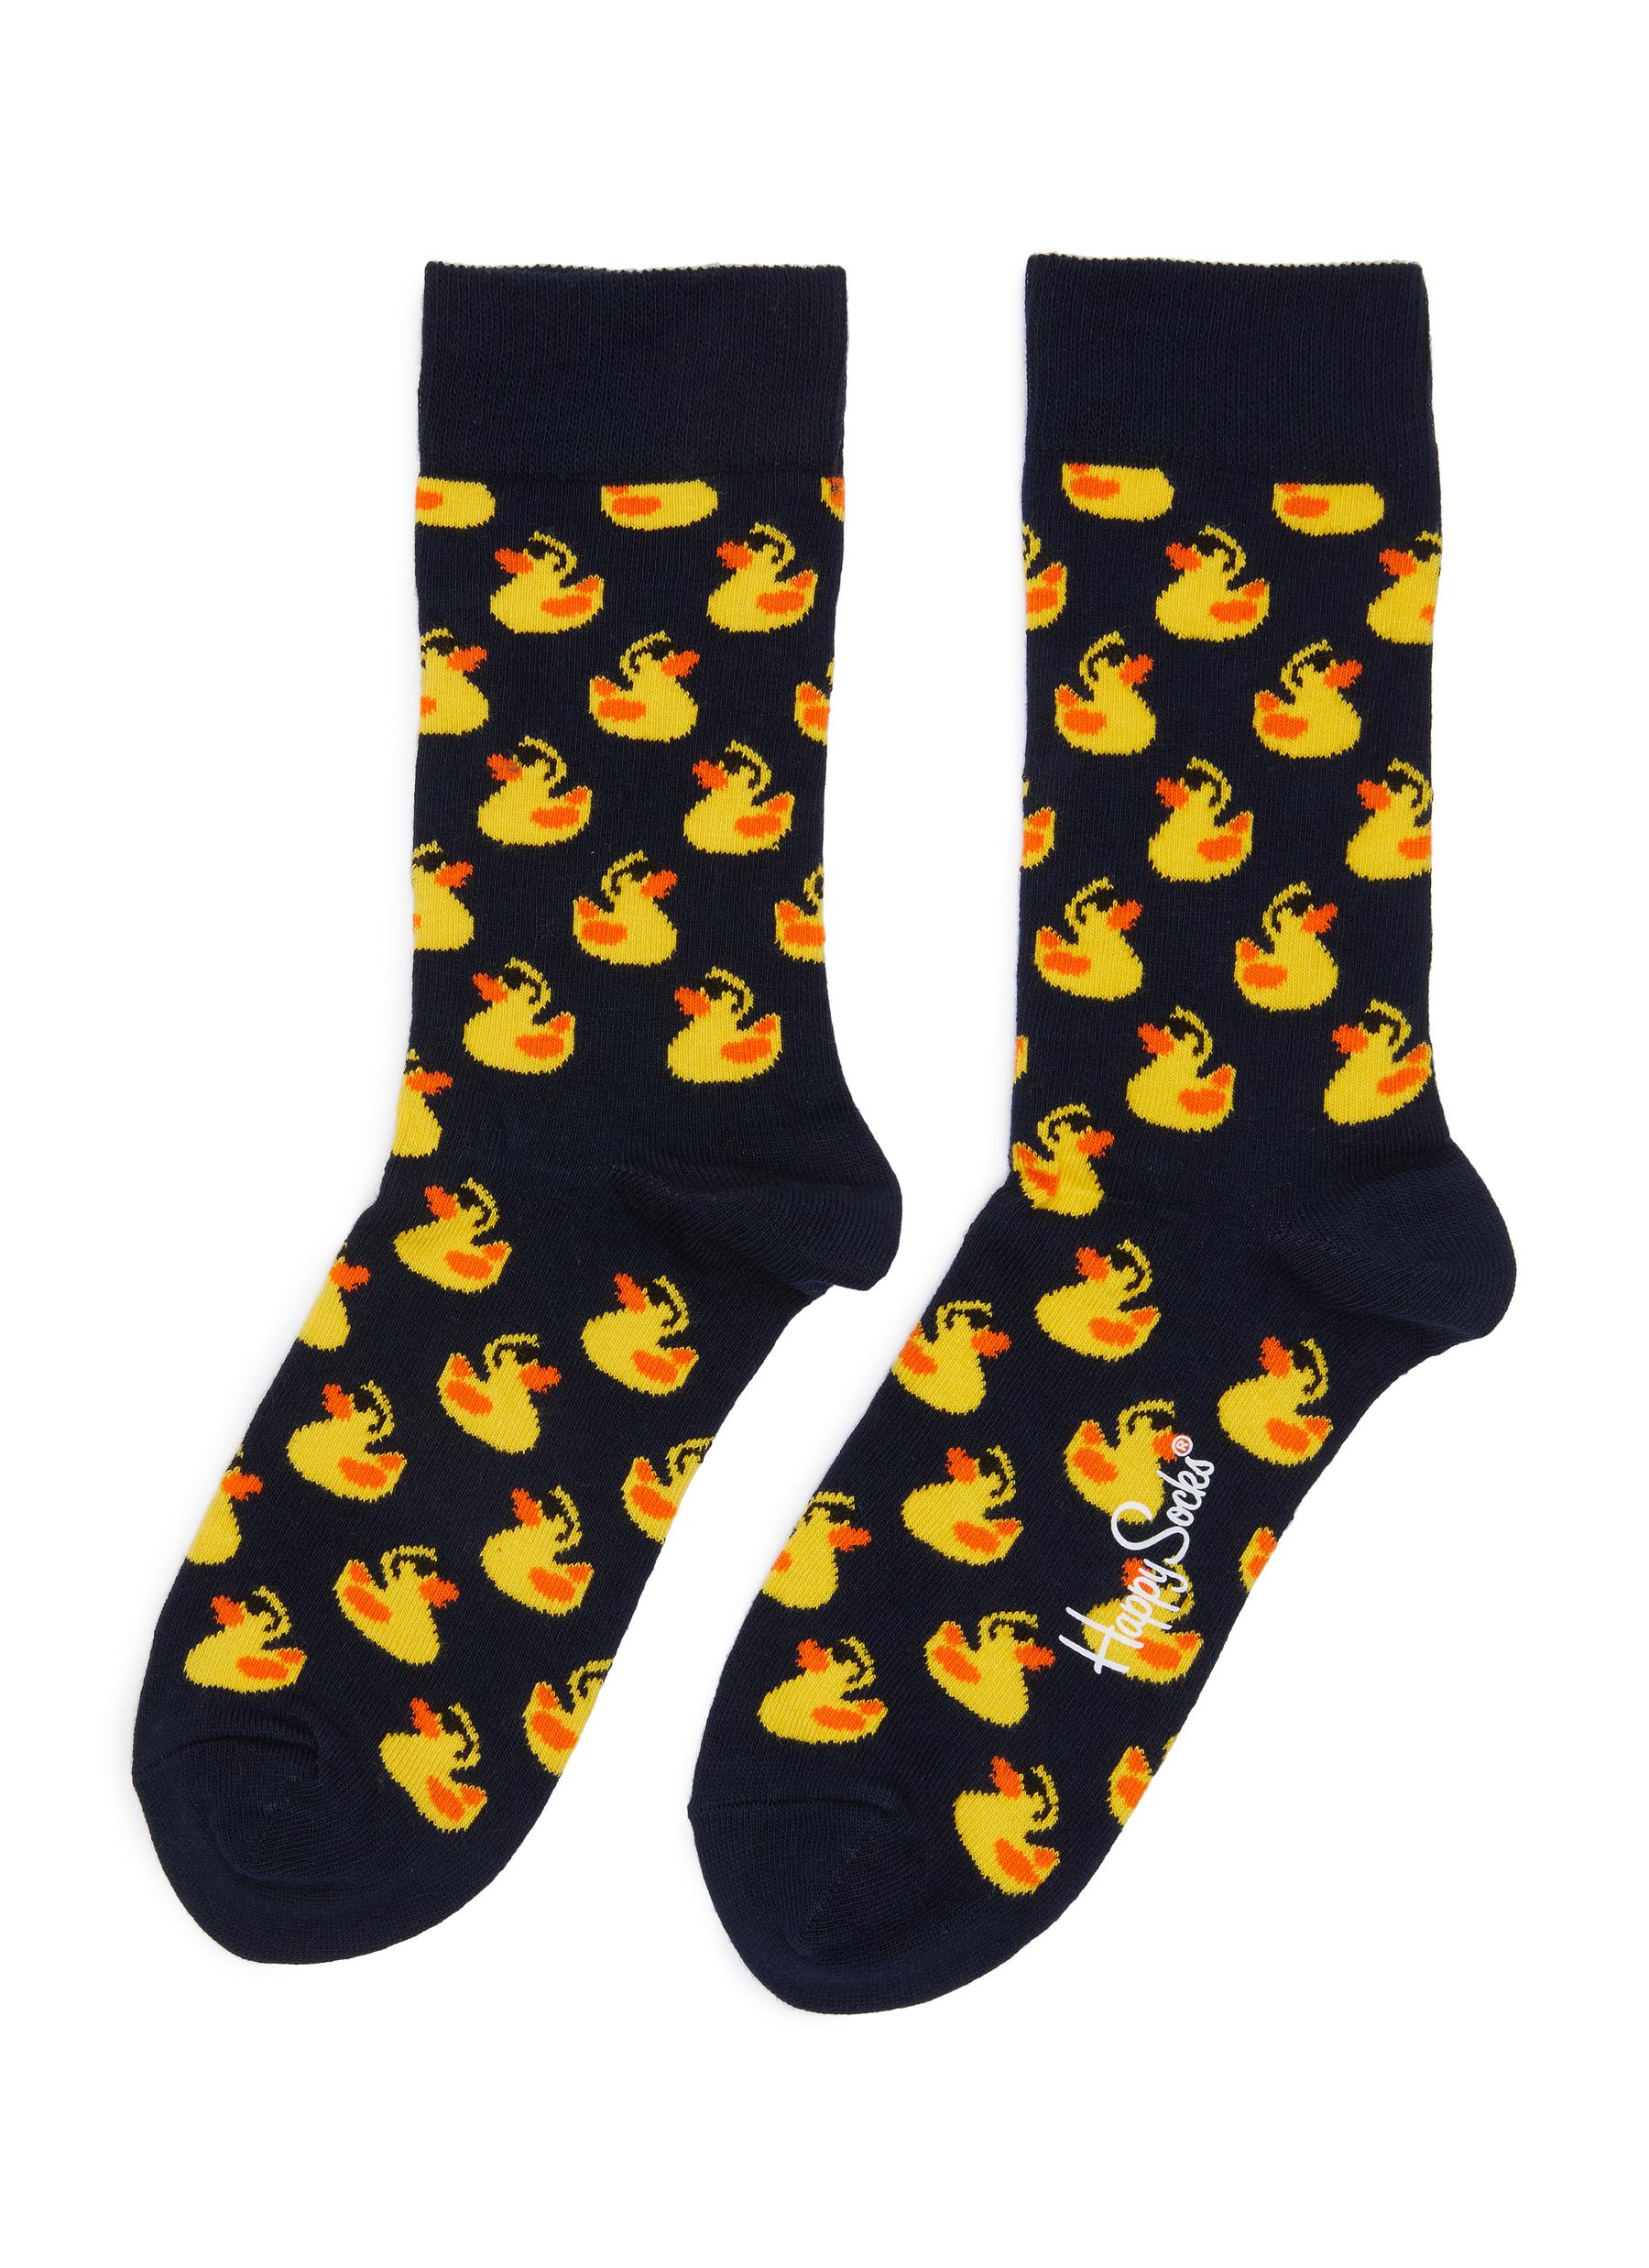 Happy Socks Rubber Duck Crew Socks | ModeSens